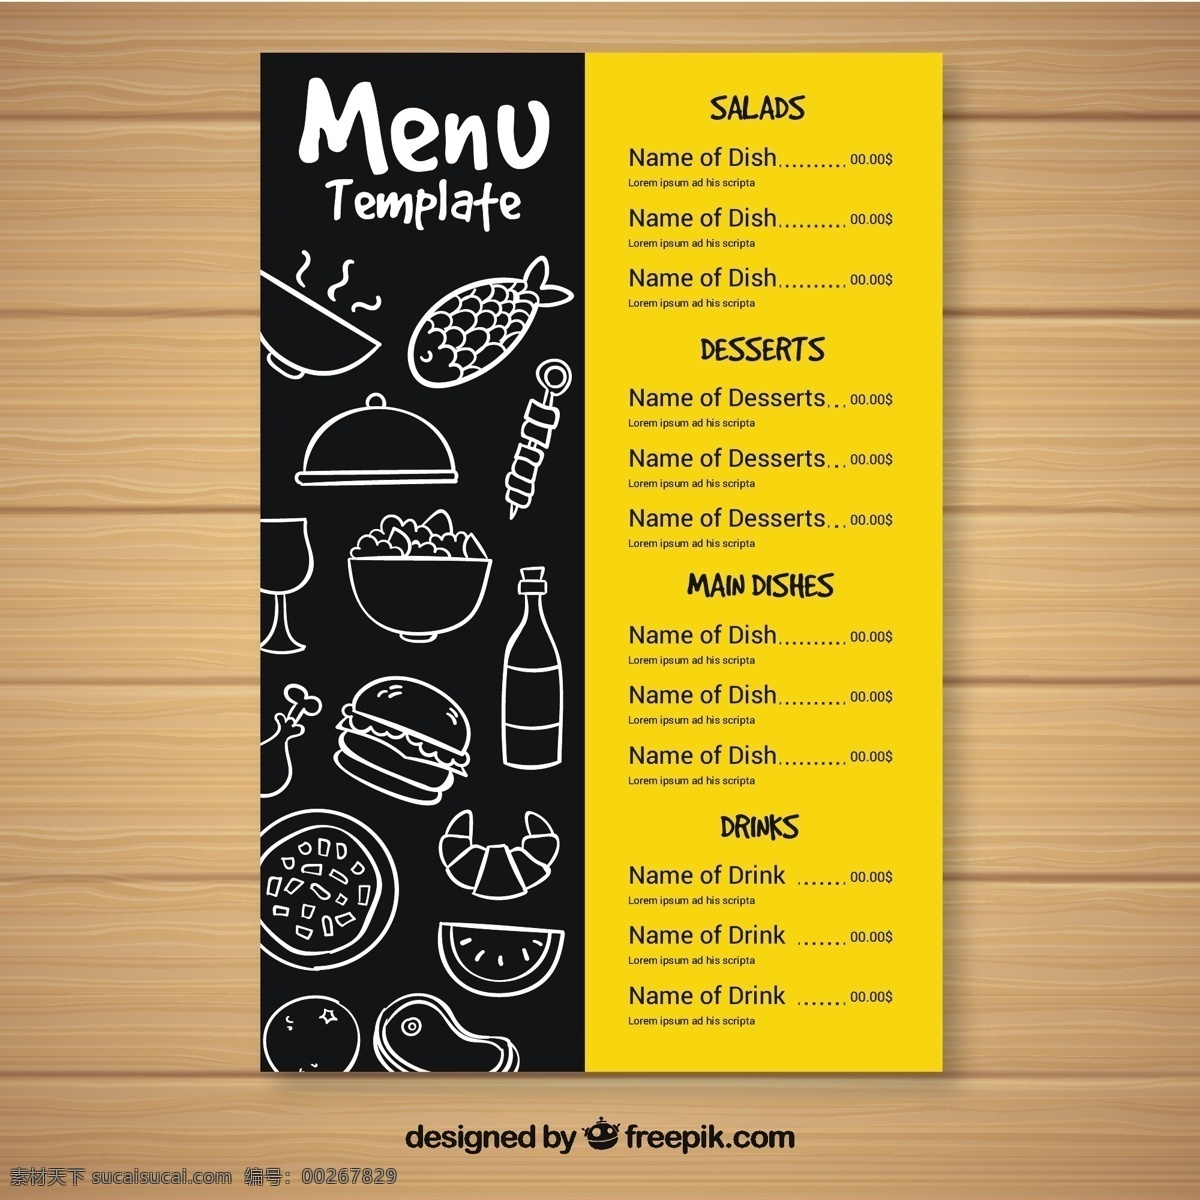 快餐菜单模板 食物 菜单 模板 餐厅 厨师 餐厅菜单 烹饪 食物菜单 晚餐 饮食 印刷 菜肴 快餐 菜单餐厅 餐 美食